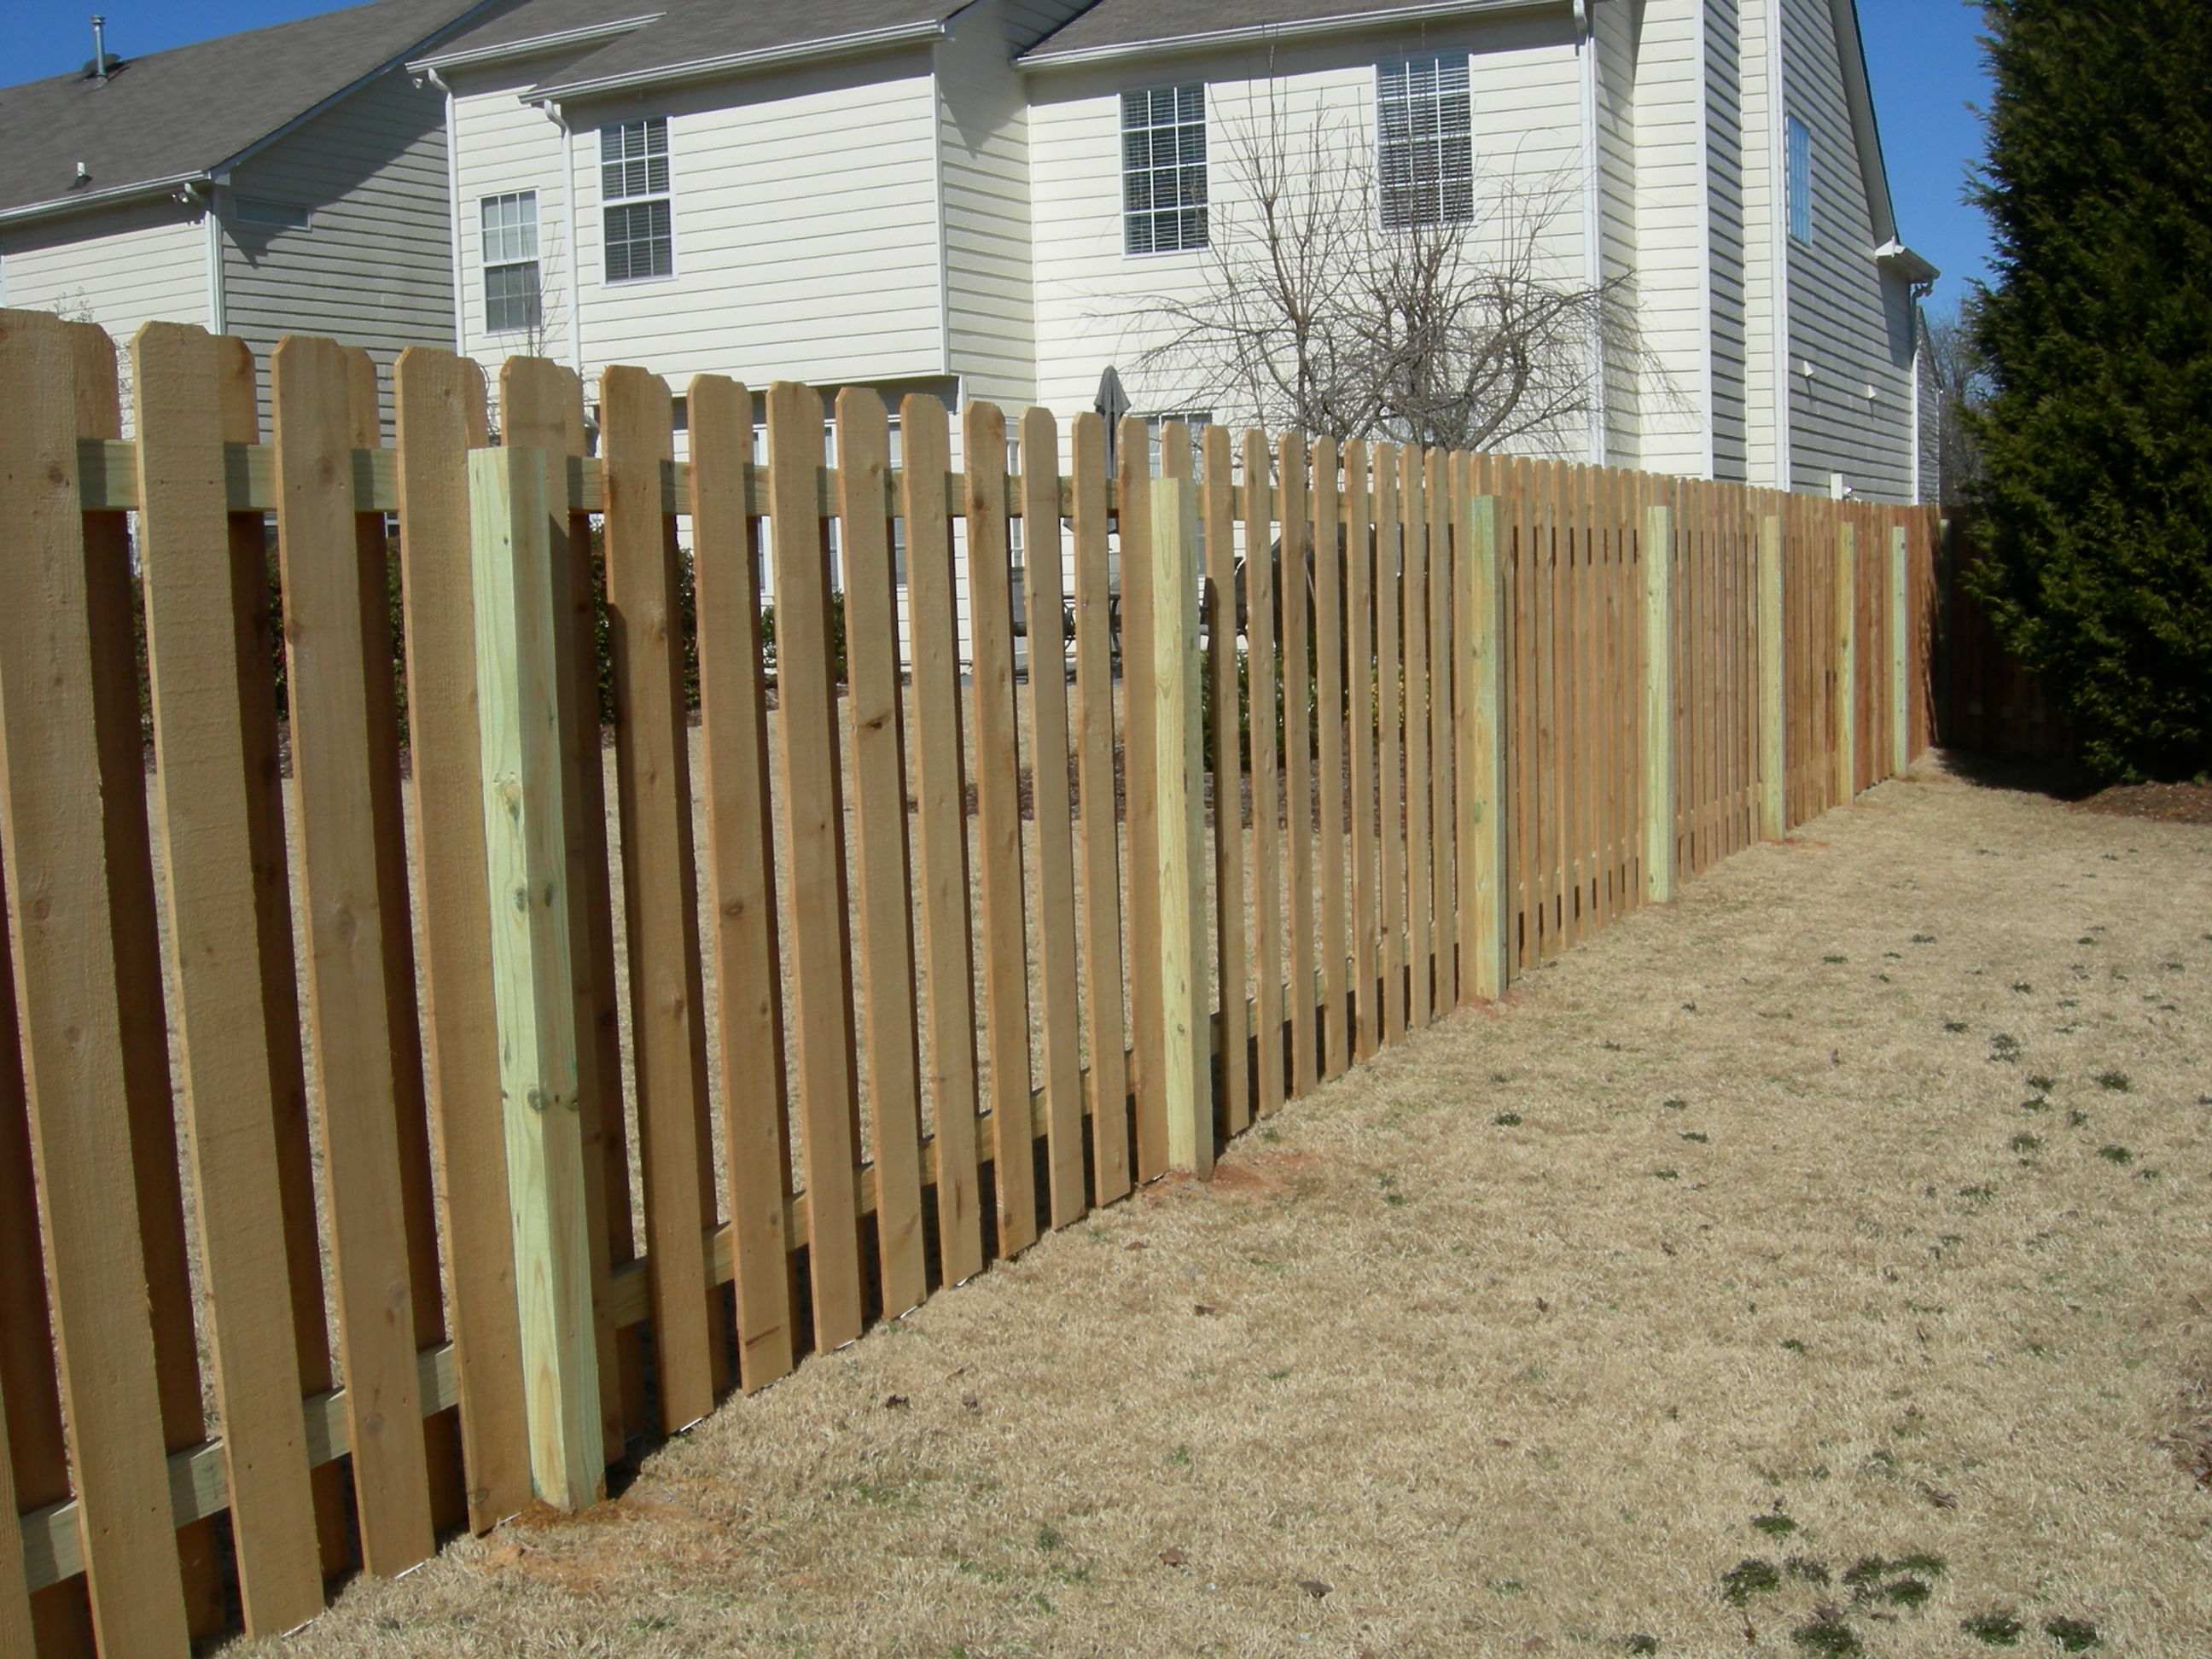 Shadowbox Fence Designs Wooden Plans patio deck plans | monogrubprim